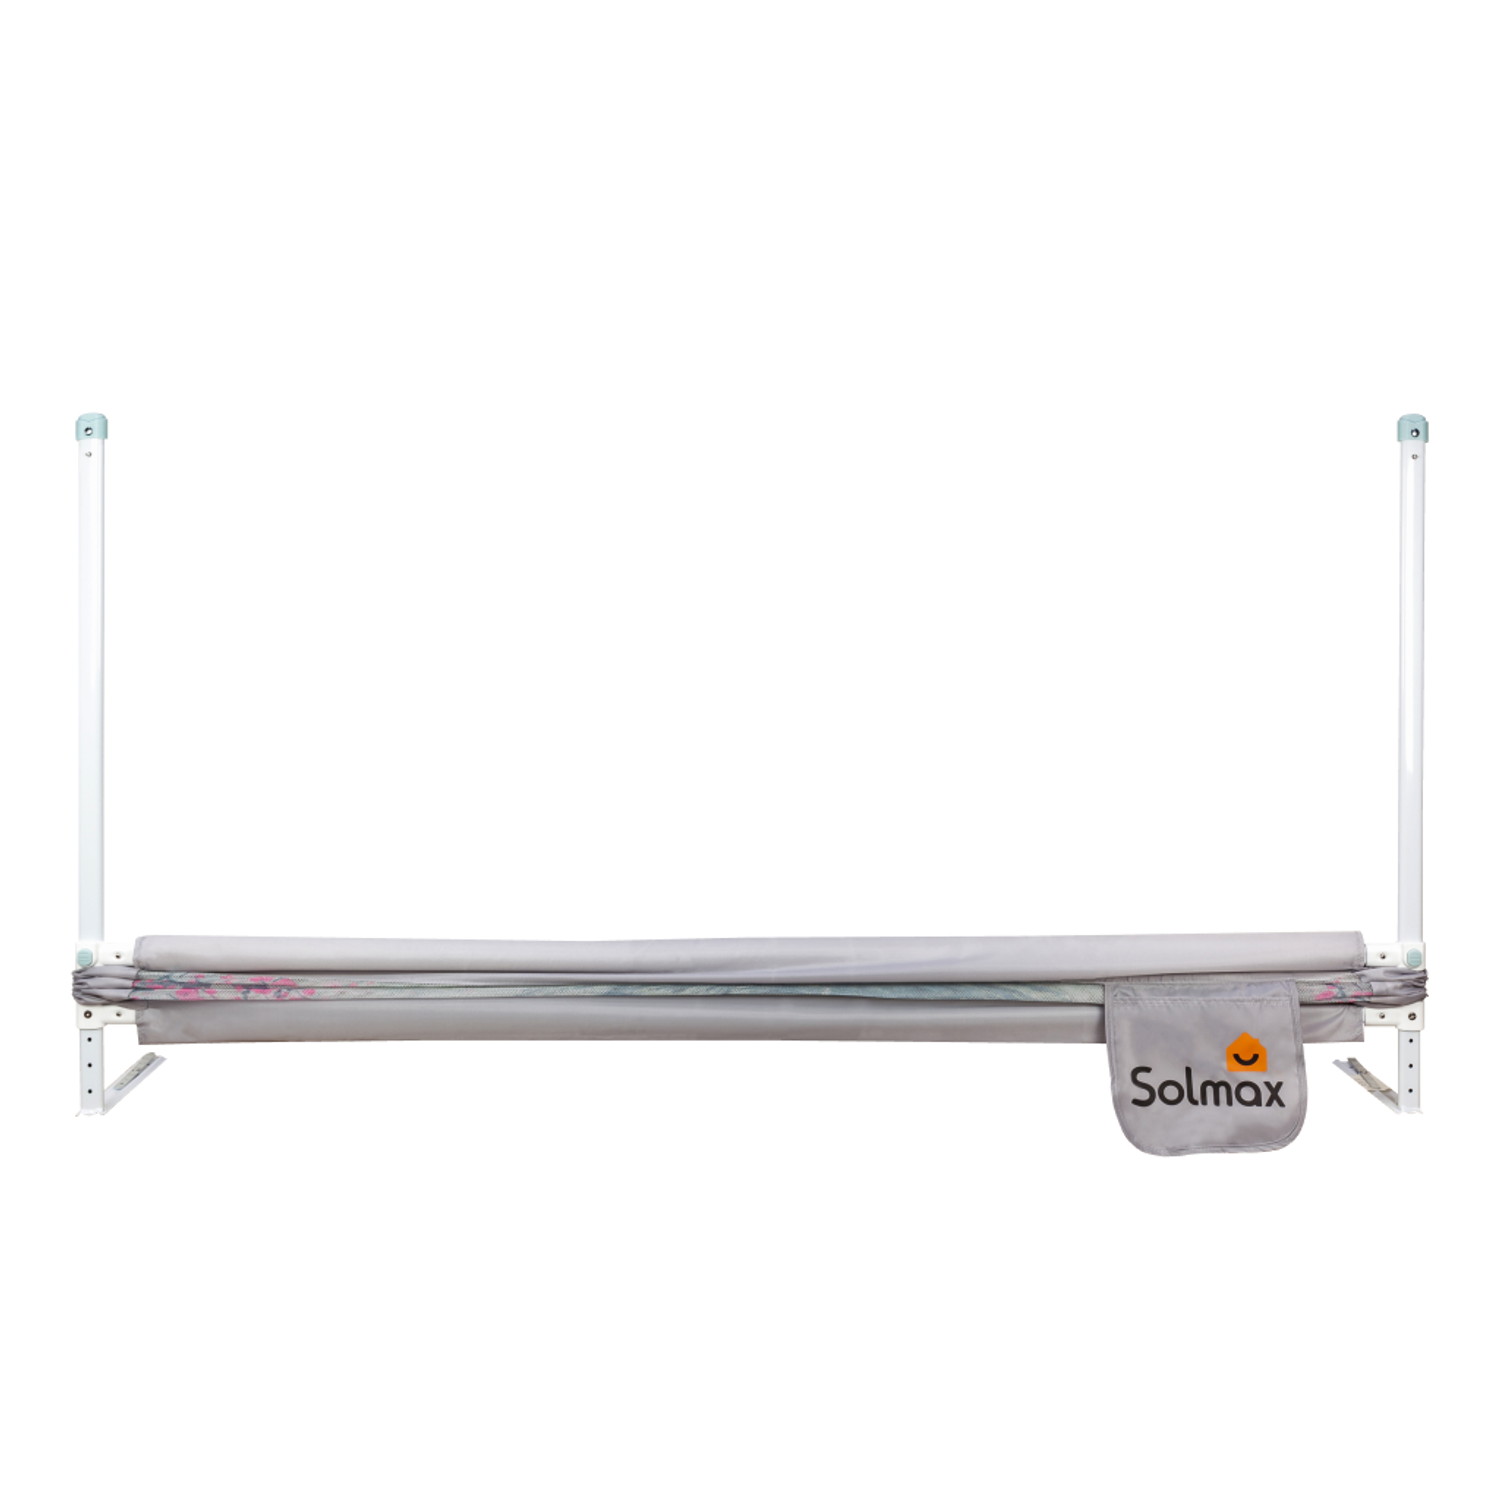 Защитный барьер для кровати Solmax 160 см серый/розовый - фото 7